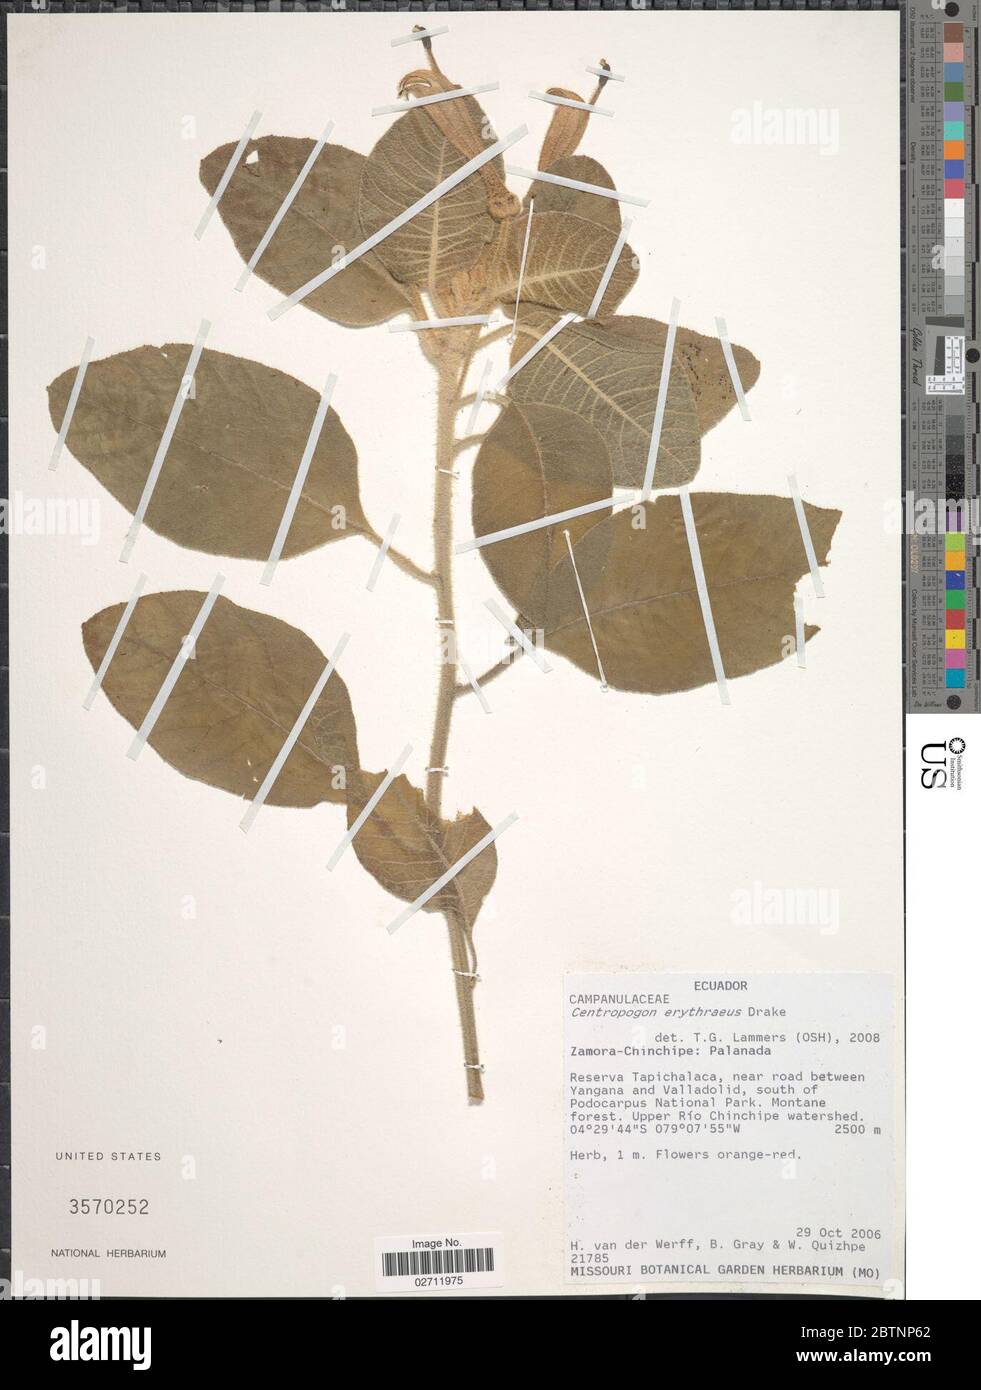 Centropogon erythraeus Drake. Banque D'Images